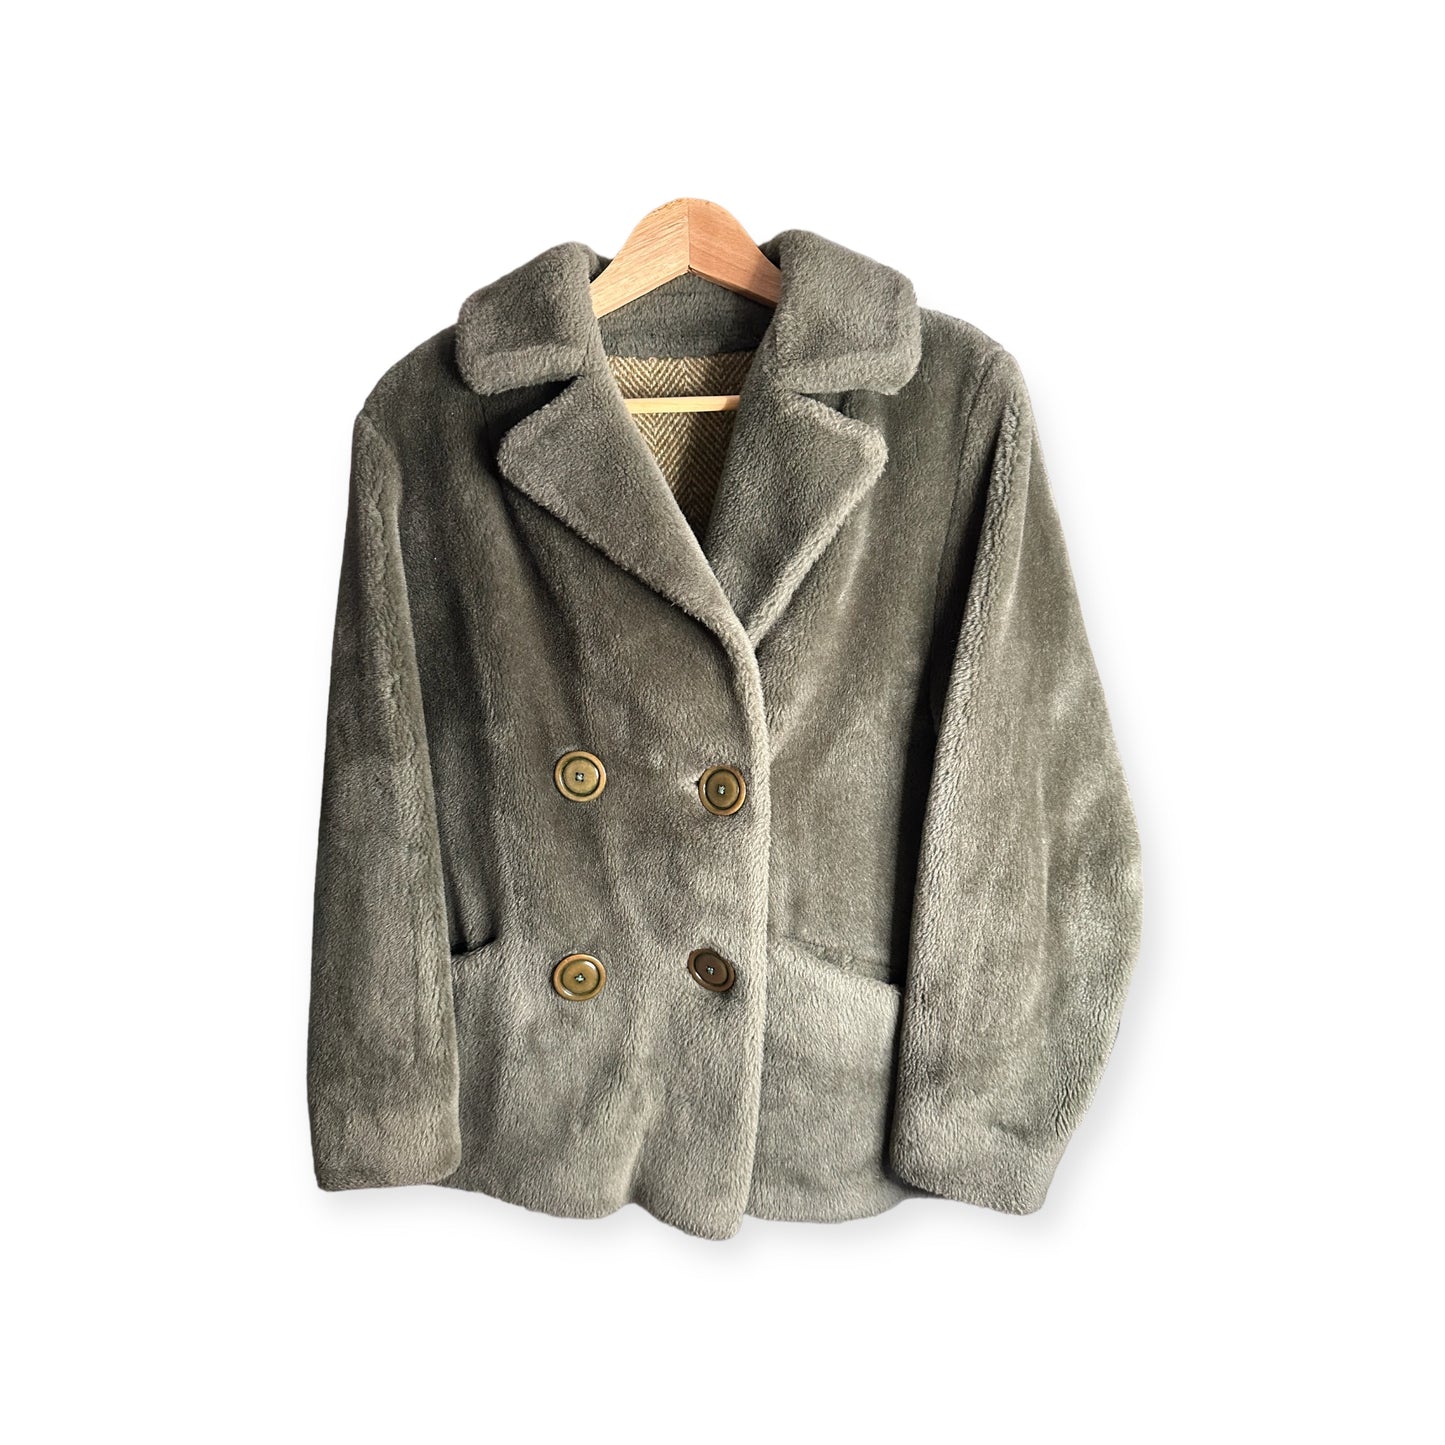 1950s/60s Union Label coat - vintage